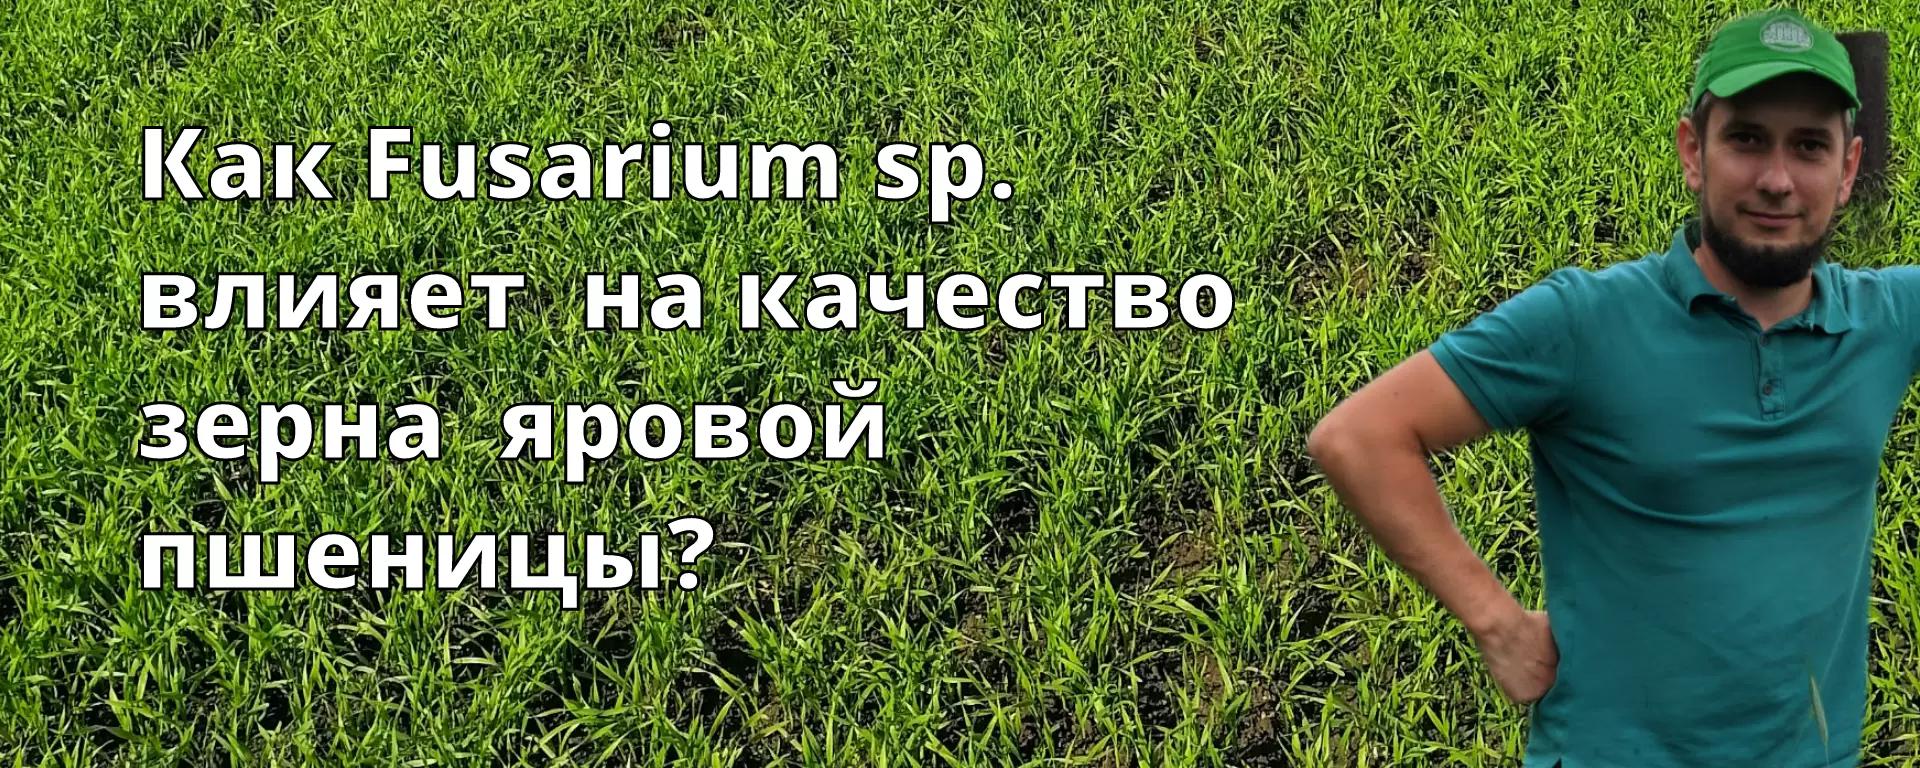 Fusarium sp. и её влияние на качество зерна яровой пшеницы (Эксперимент).